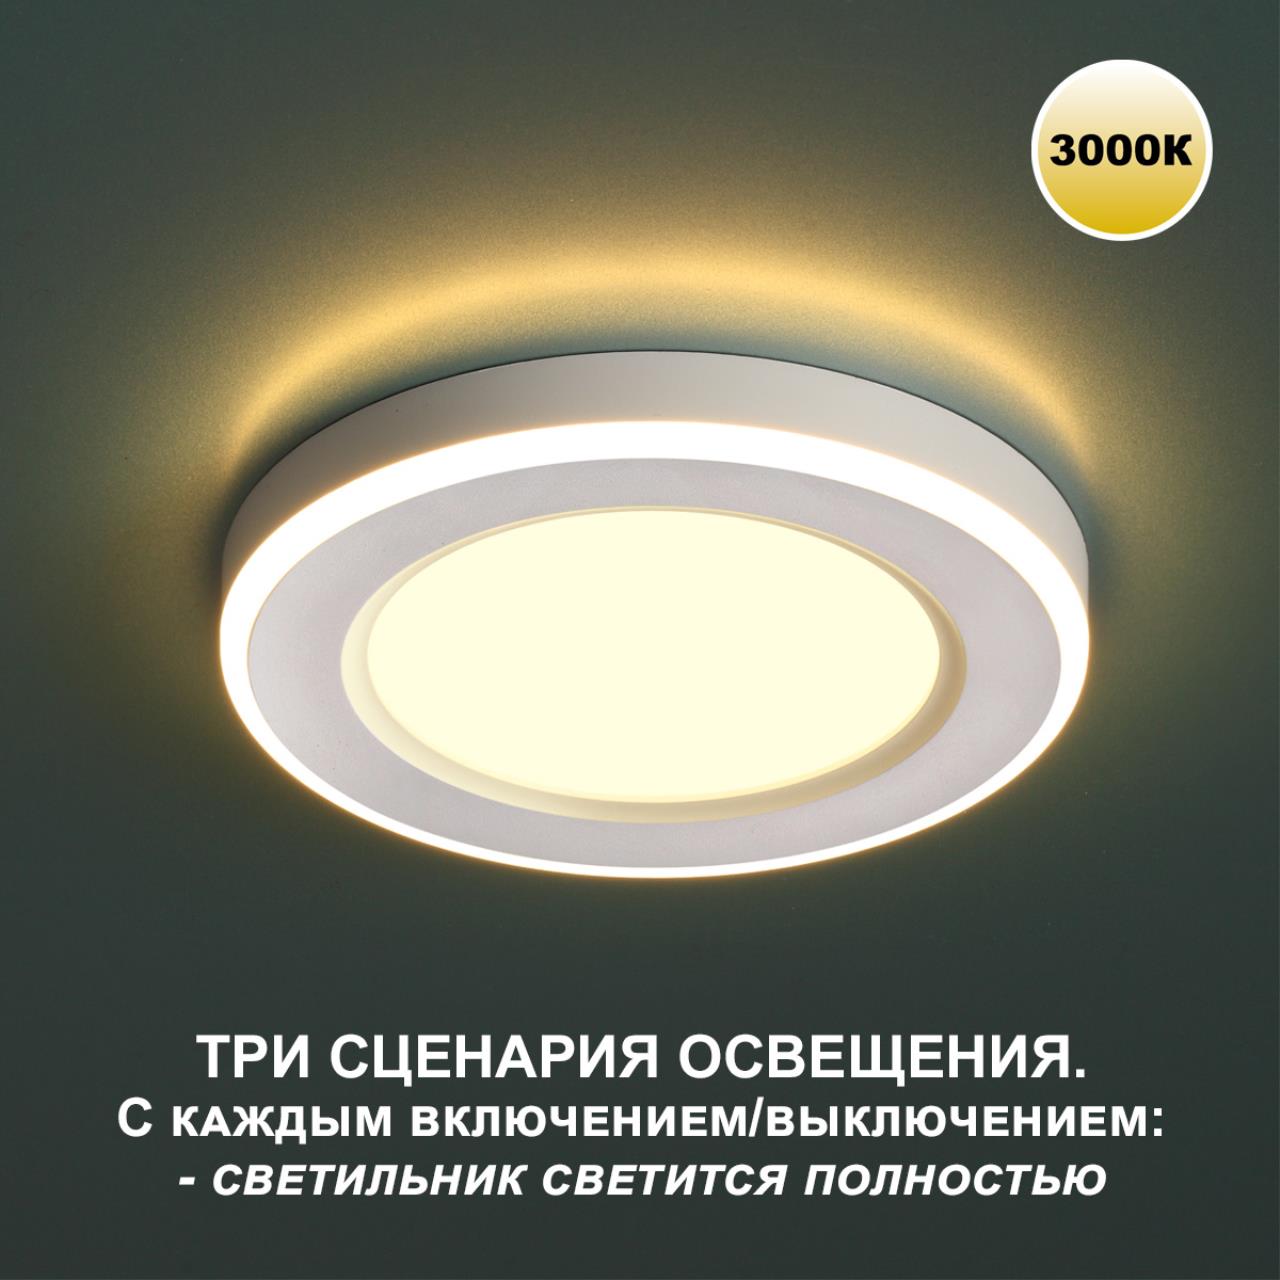 Трёхрежимный встраиваемый светодиодный светильник Novotech SPAN 359020